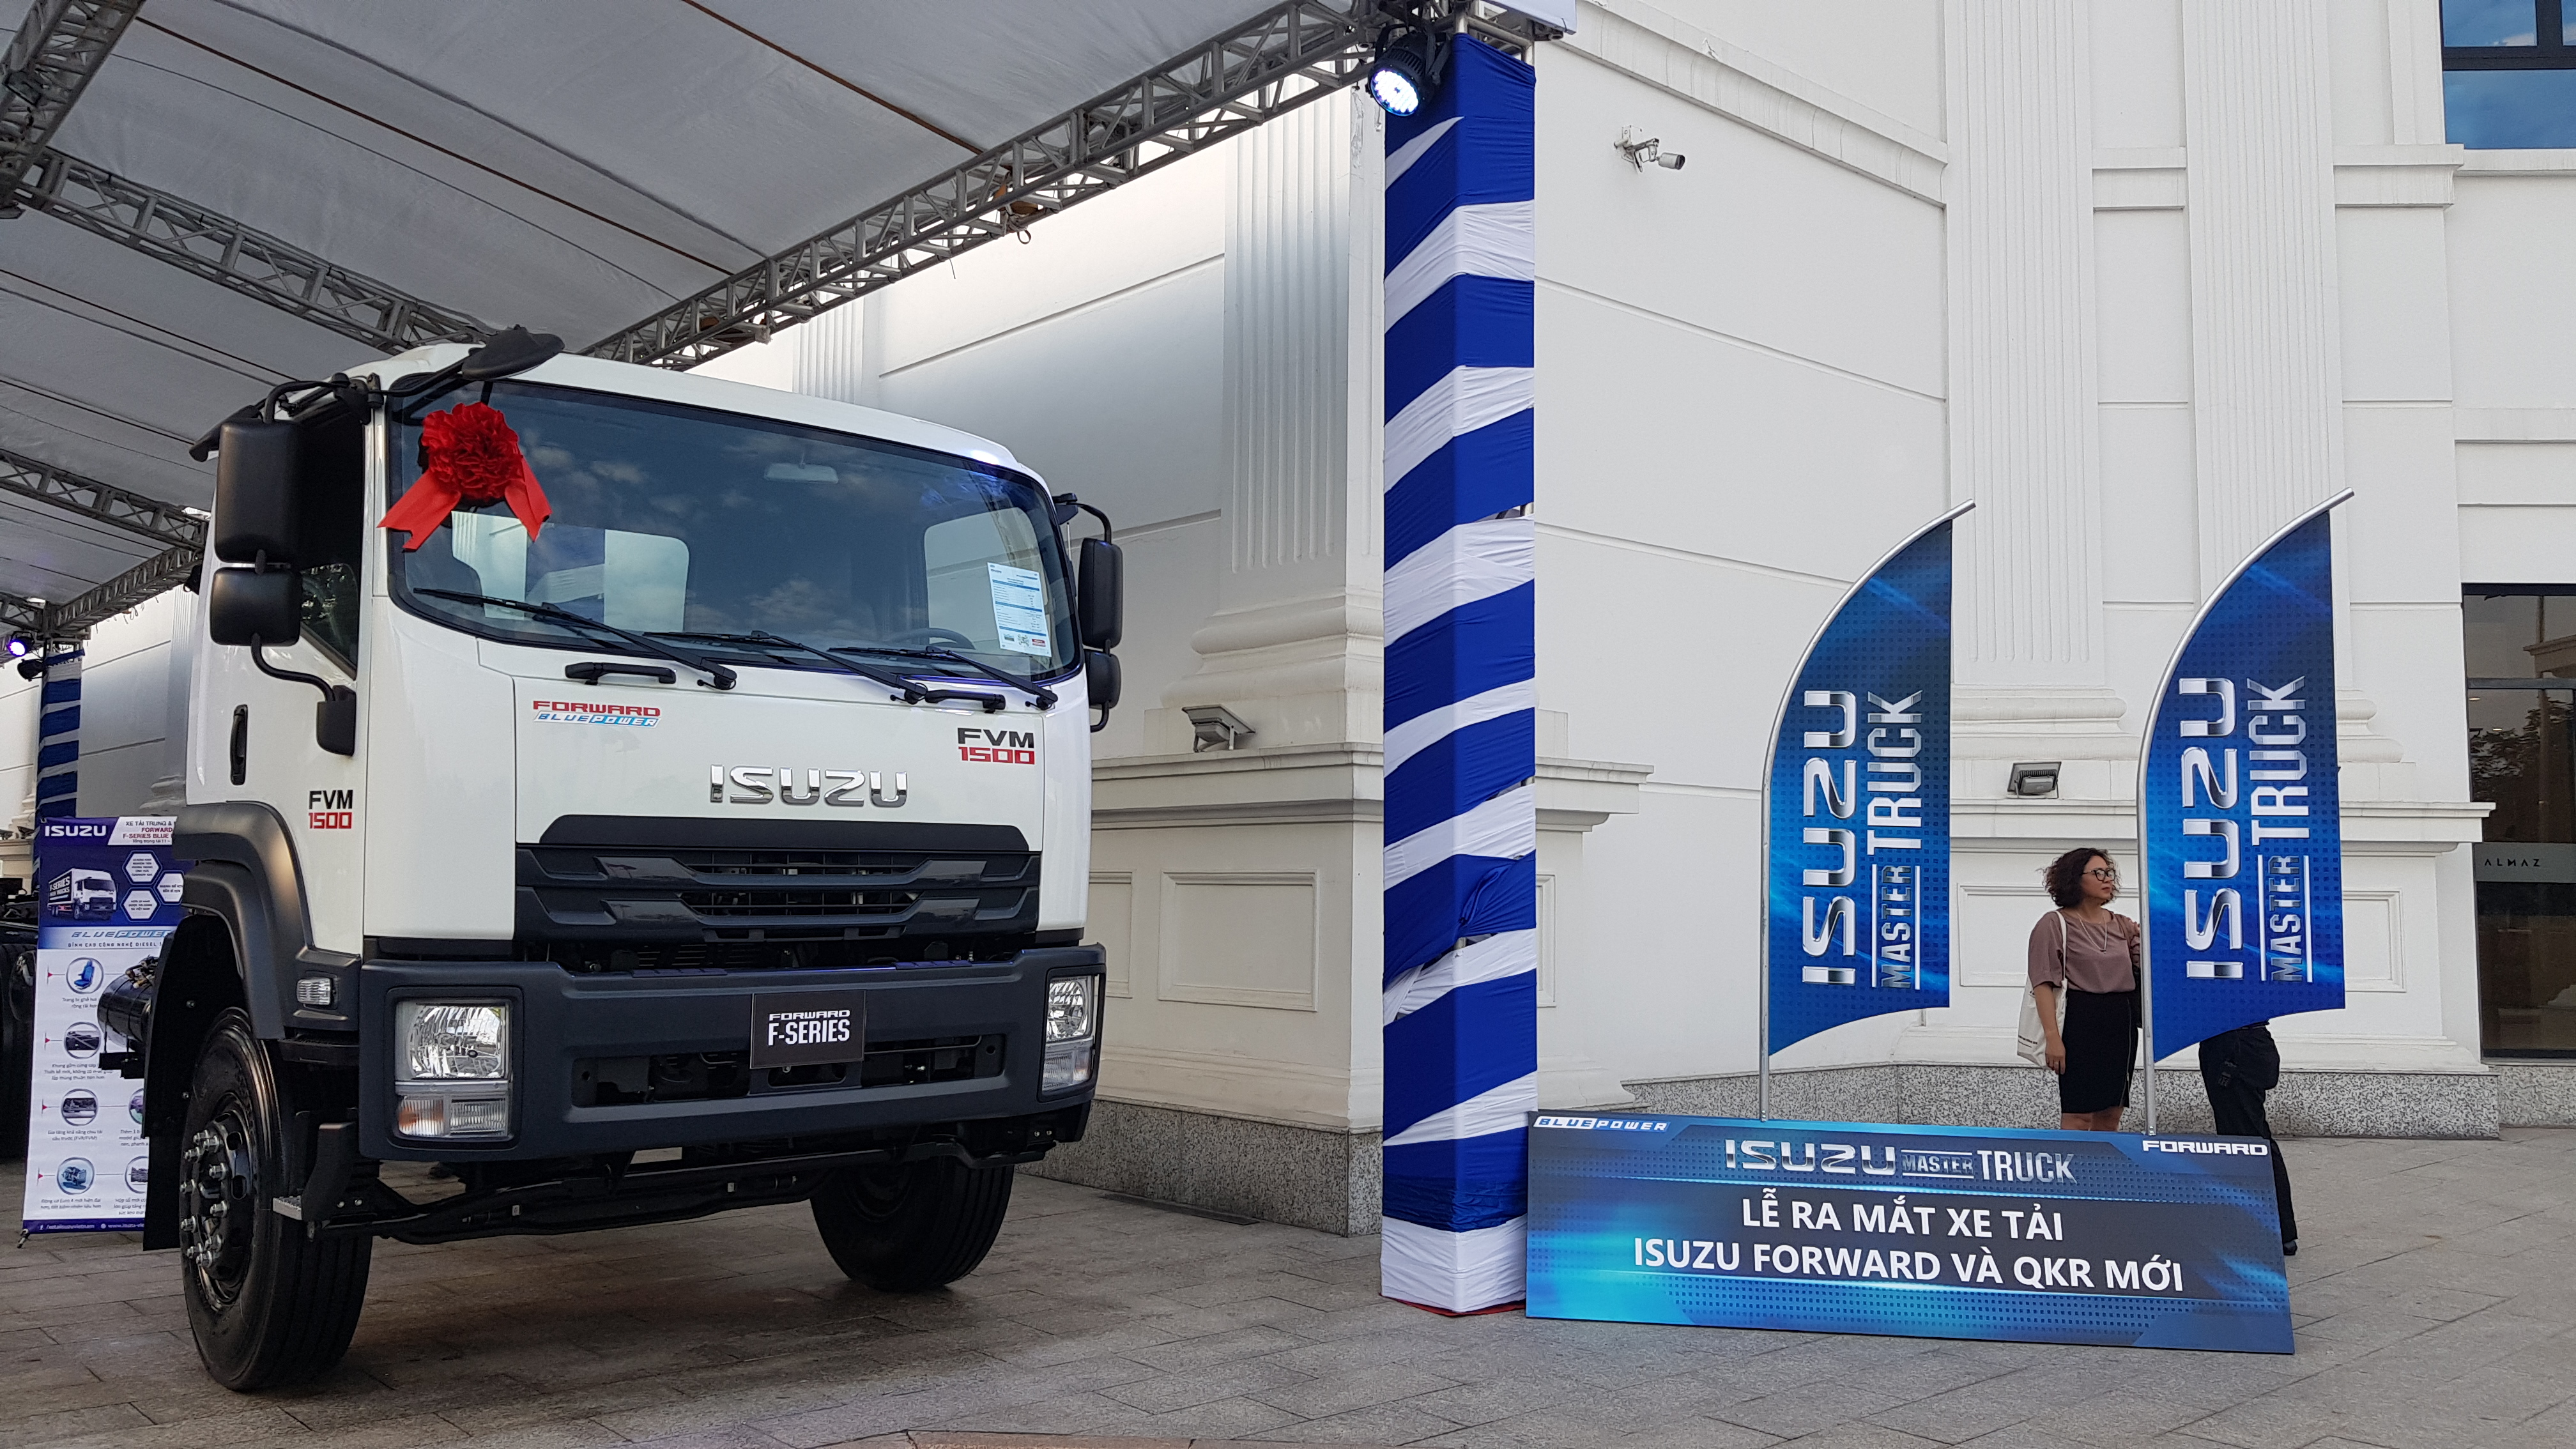 Xe tải Isuzu động cơ Blue Power tiến quân thị trường miền Bắc